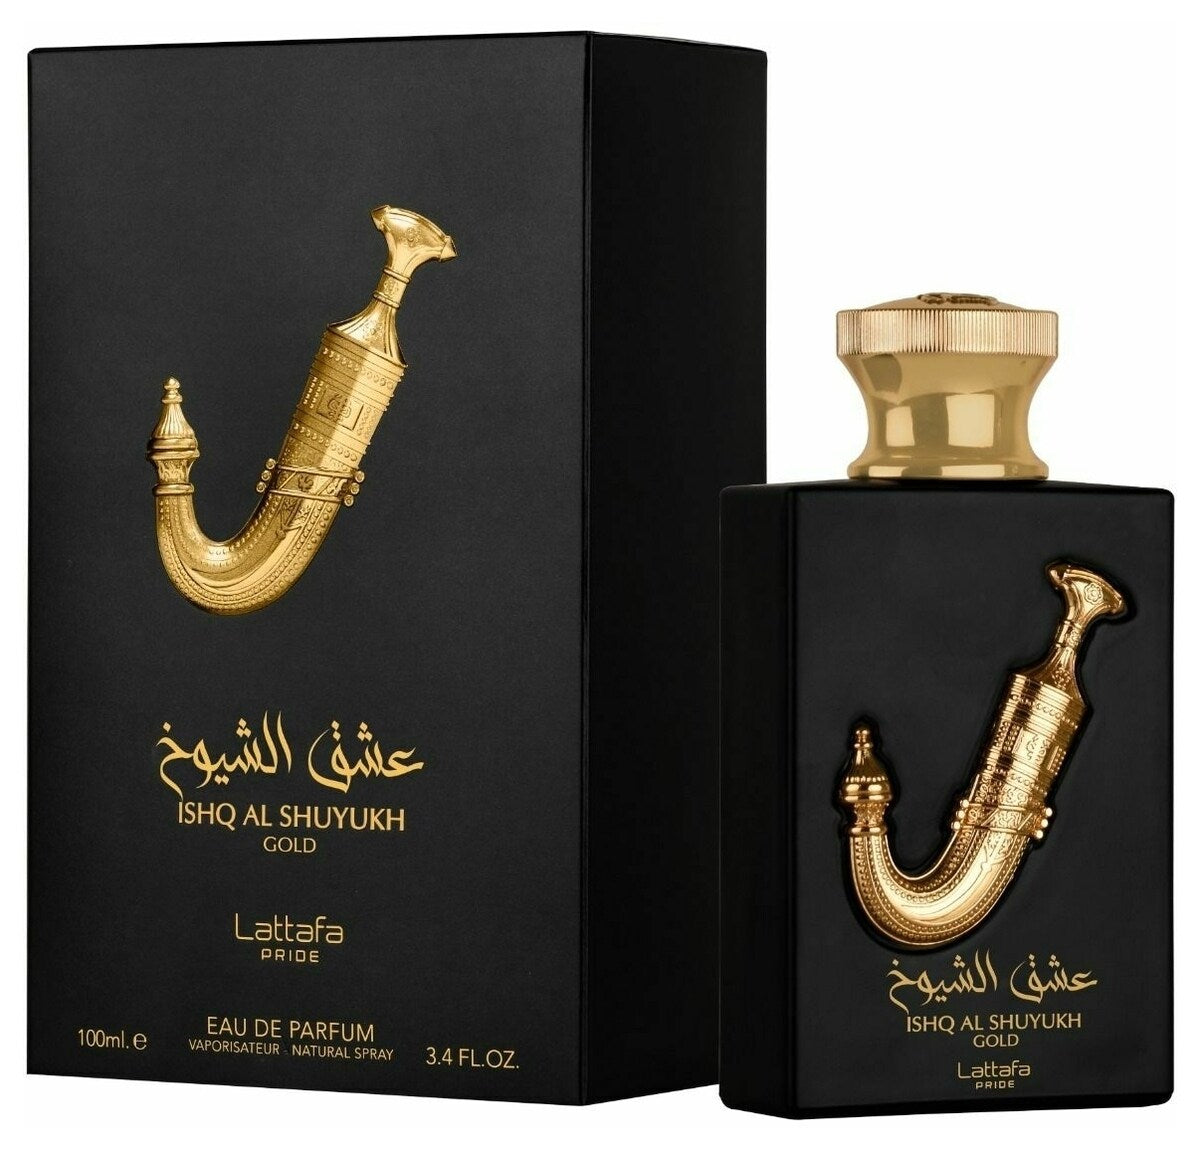 Ishq Al Shuyukh Gold EDP (100ml) spray perfume by Lattafa | Khan El Khalili